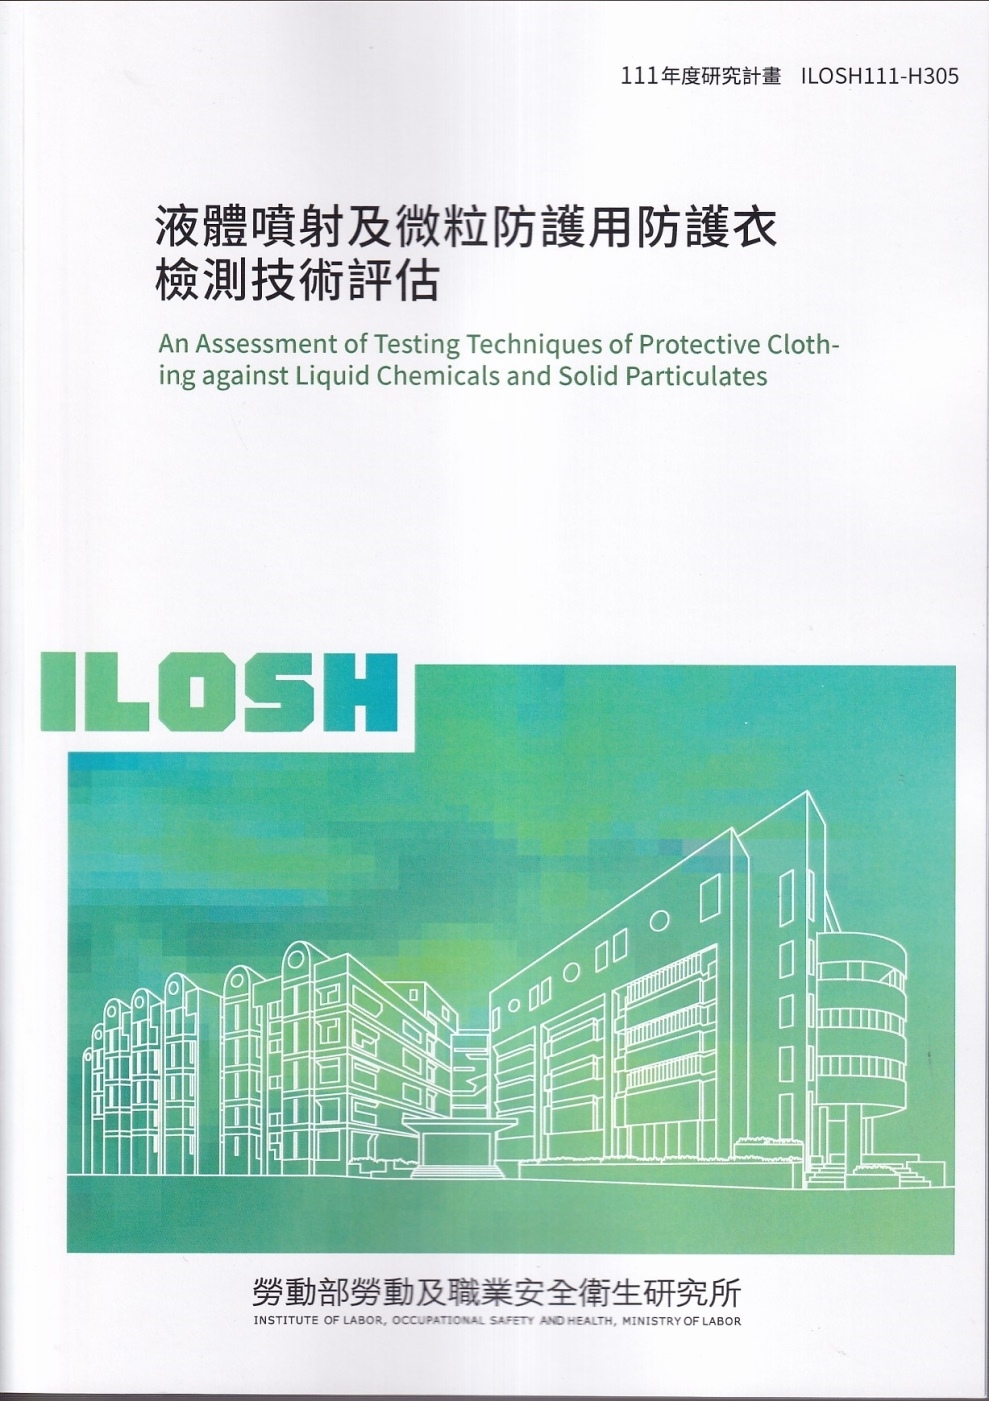 液體噴射及微粒防護用防護衣檢測技術評估ILOSH111-H305